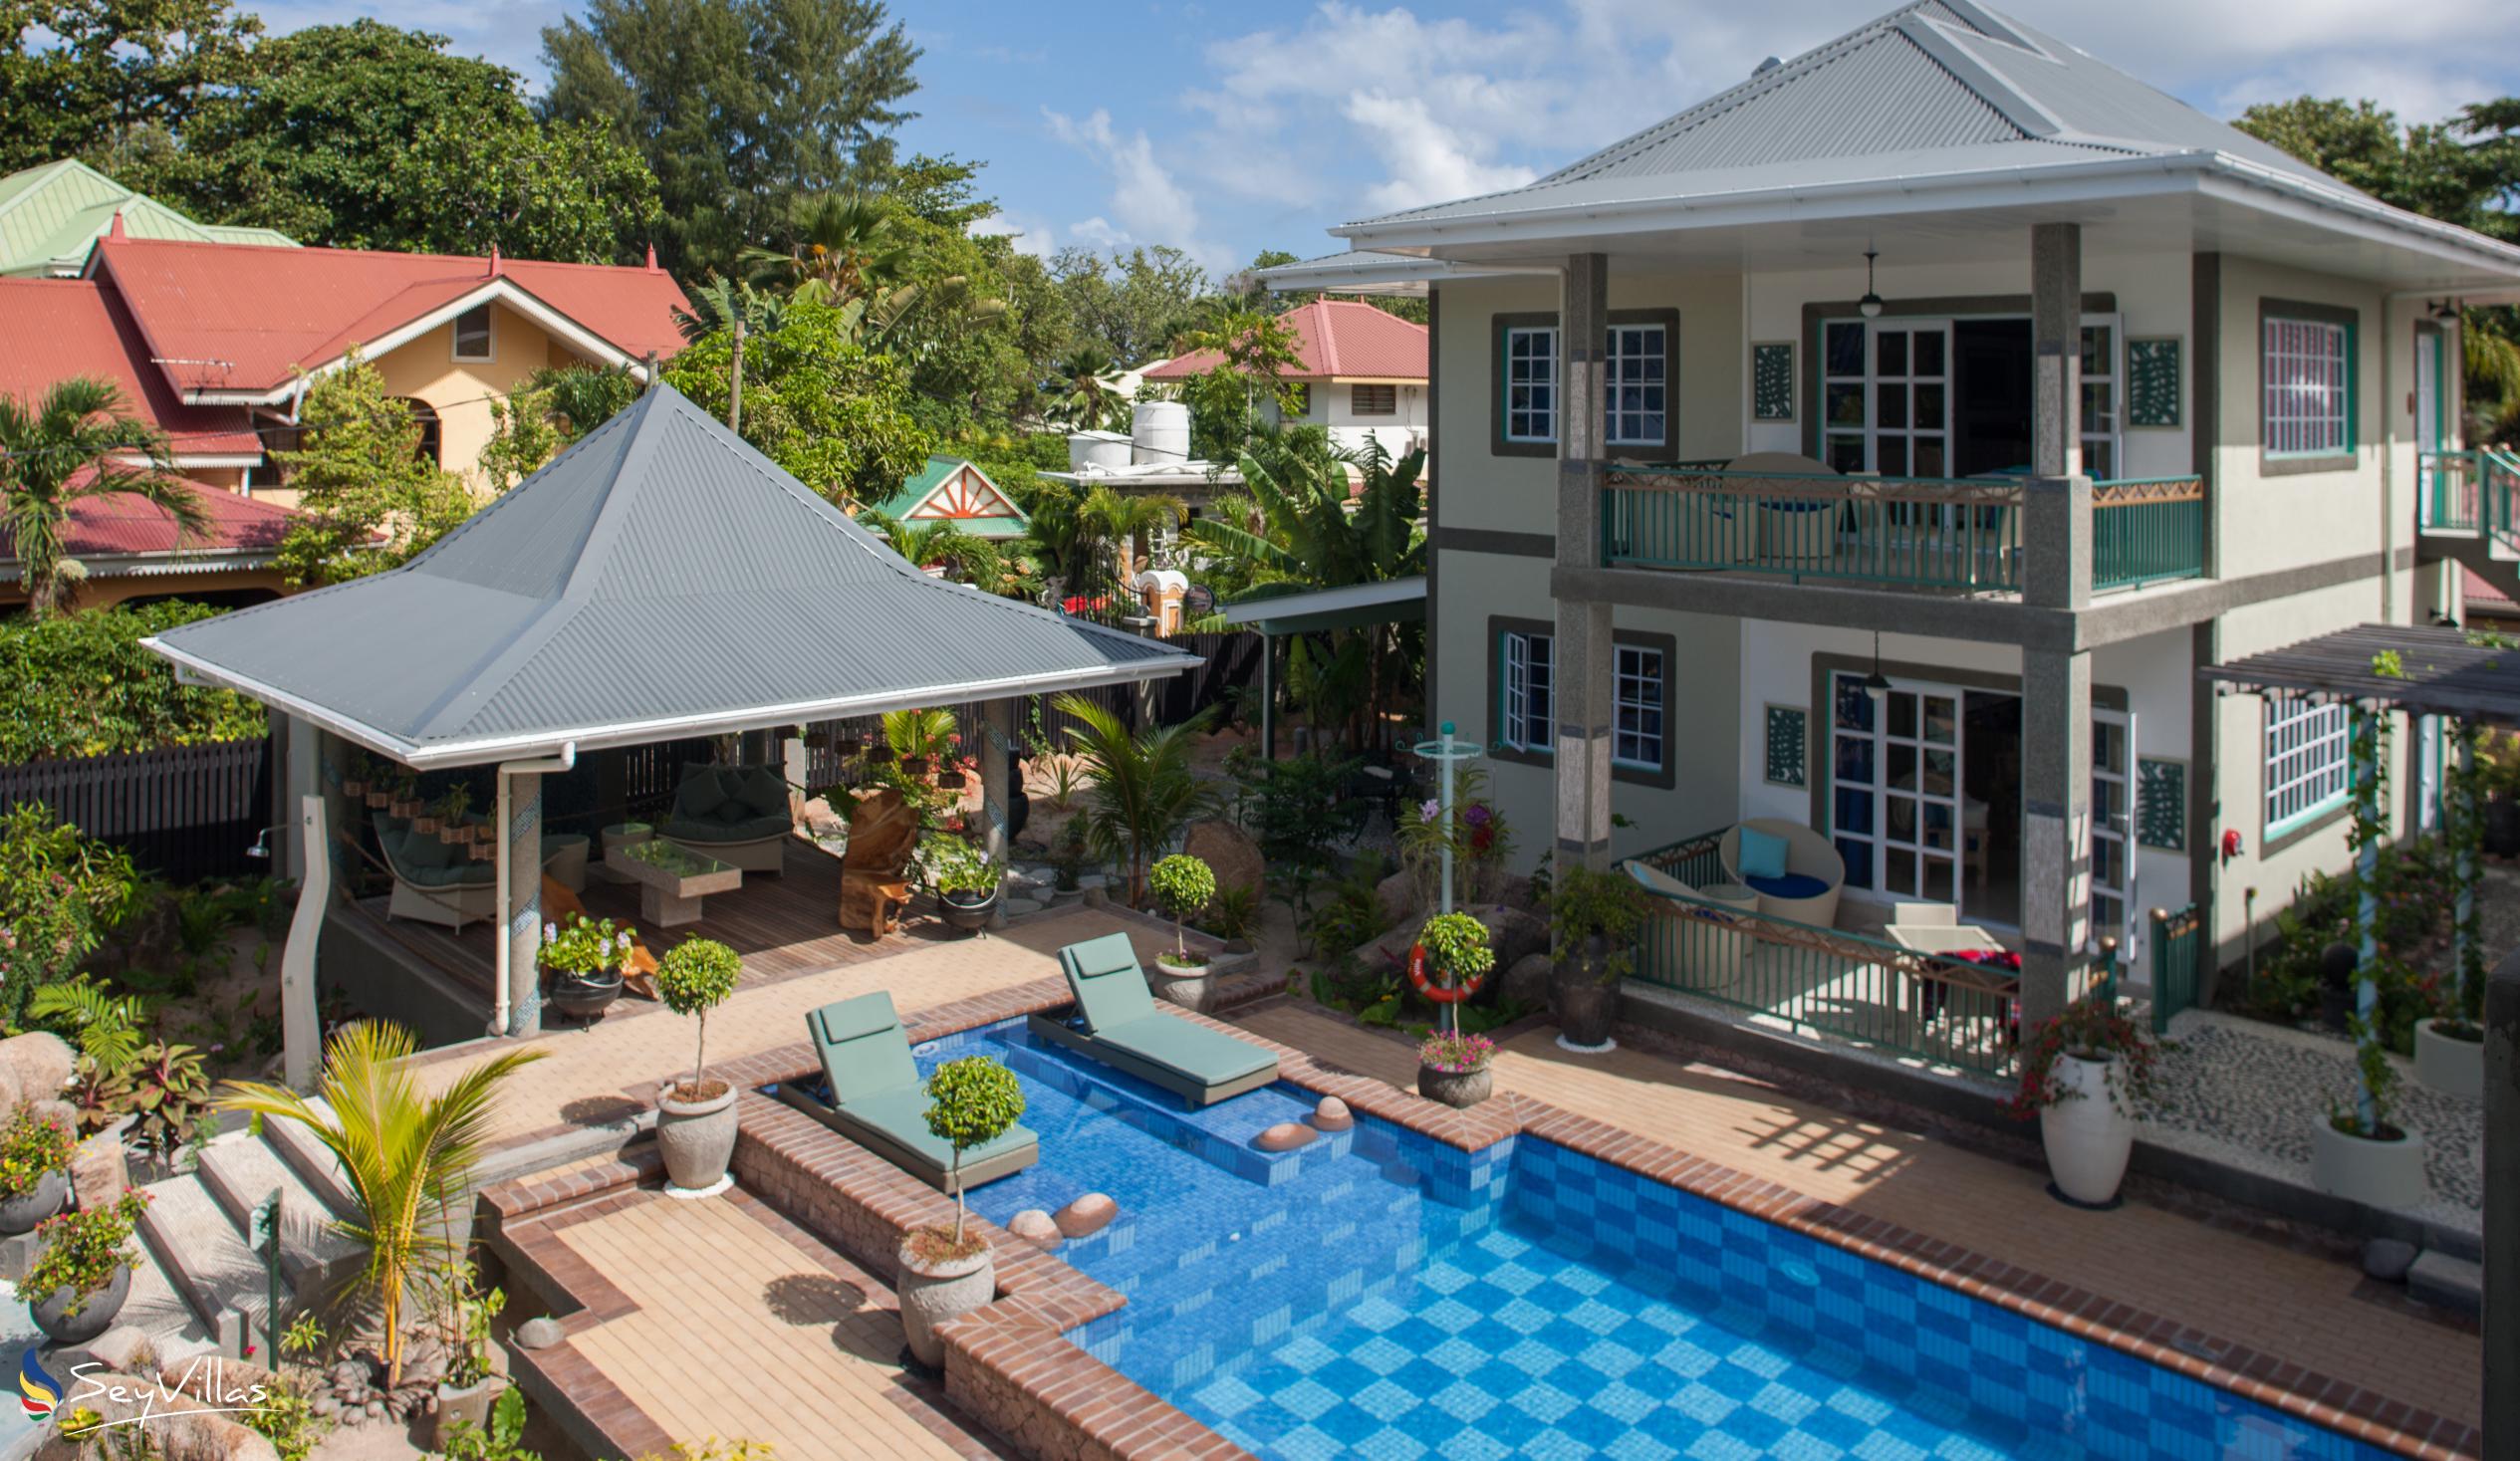 Foto 11: Villa Charme De L'ile - Aussenbereich - La Digue (Seychellen)